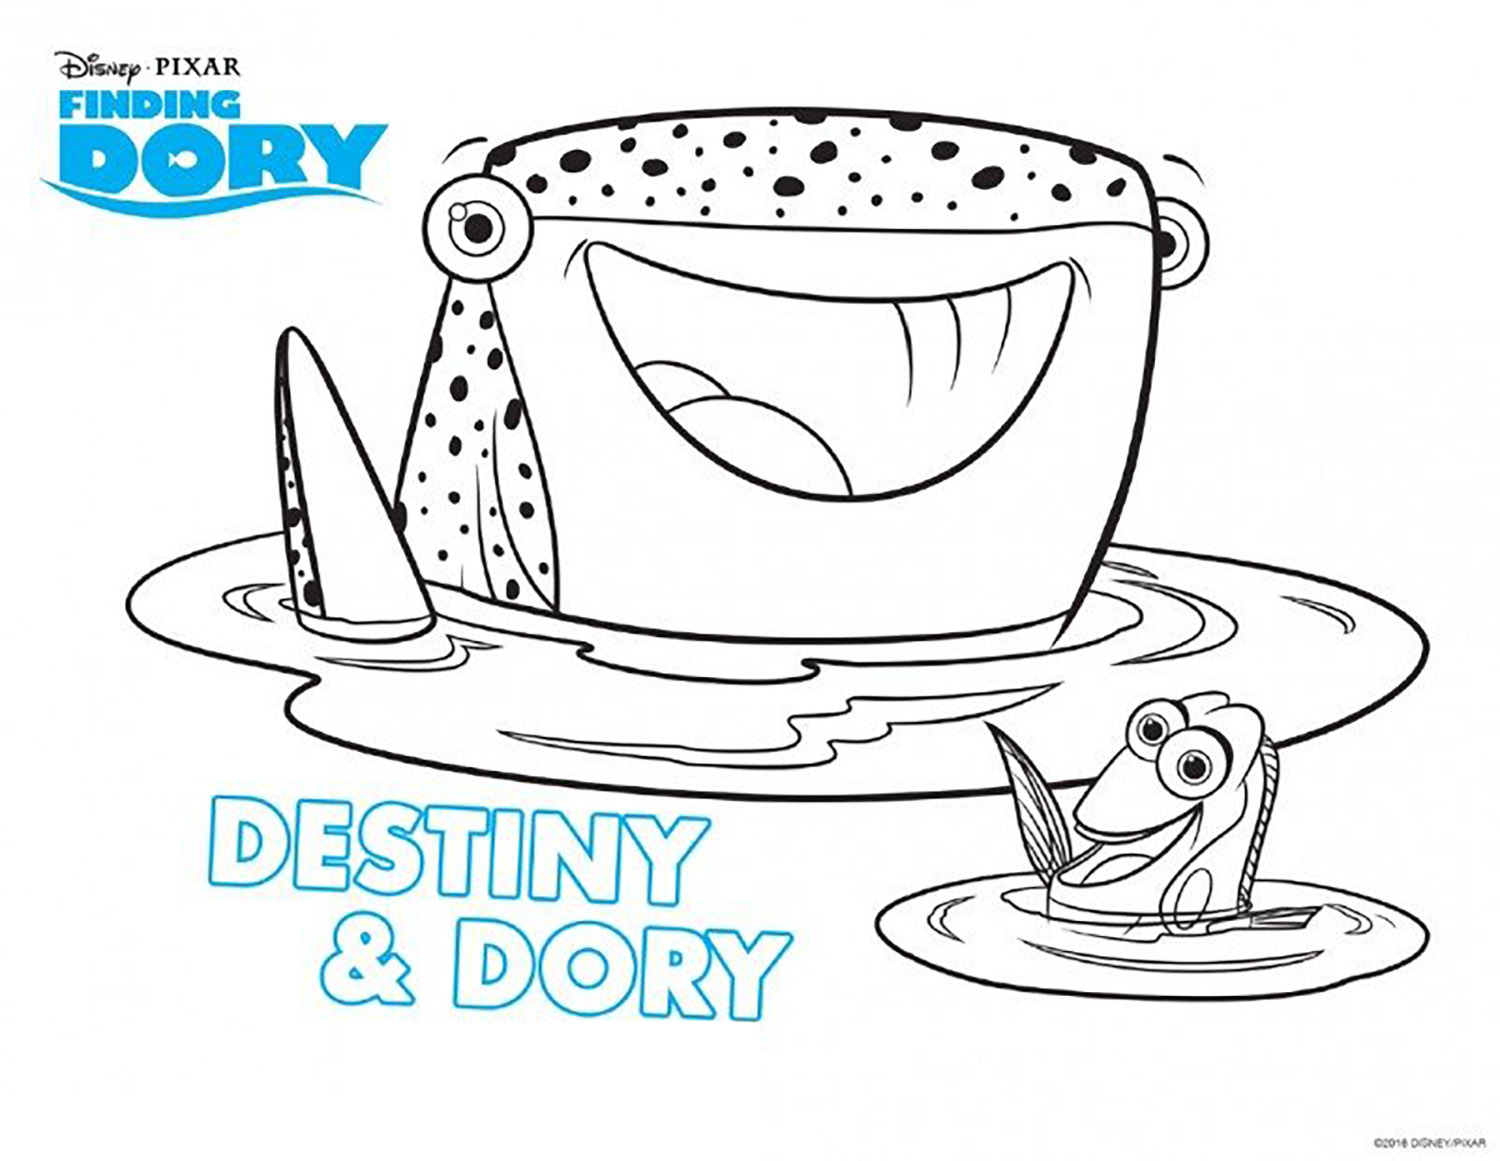 Coloração em Dory's Procura: Destino & Dory